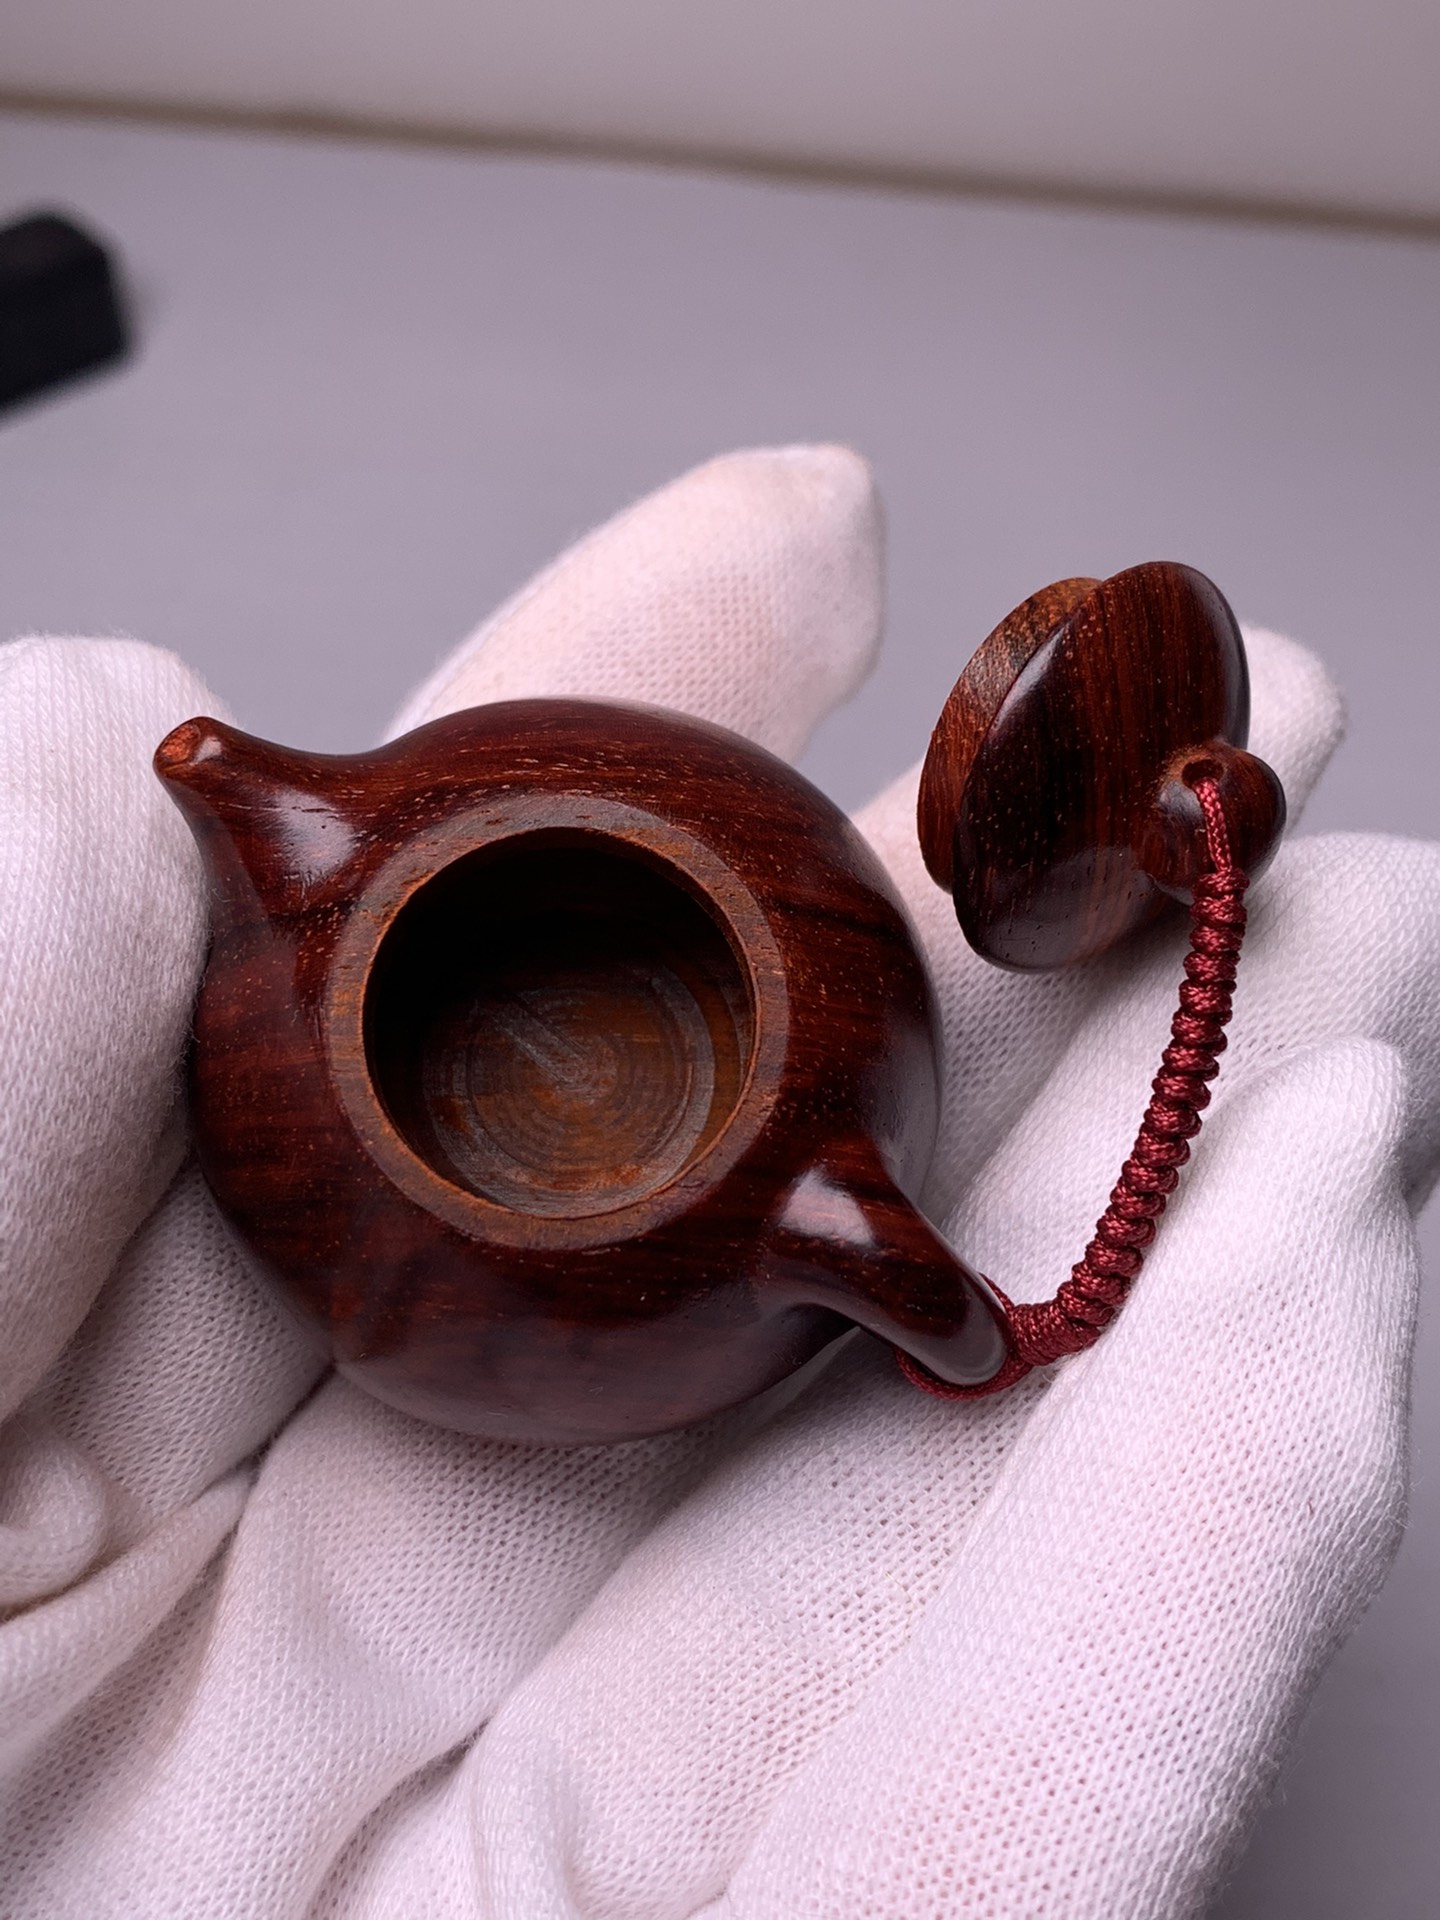 数控车床加工的小茶壶印度小叶紫檀木雕刻茶壶装饰摆件手把件